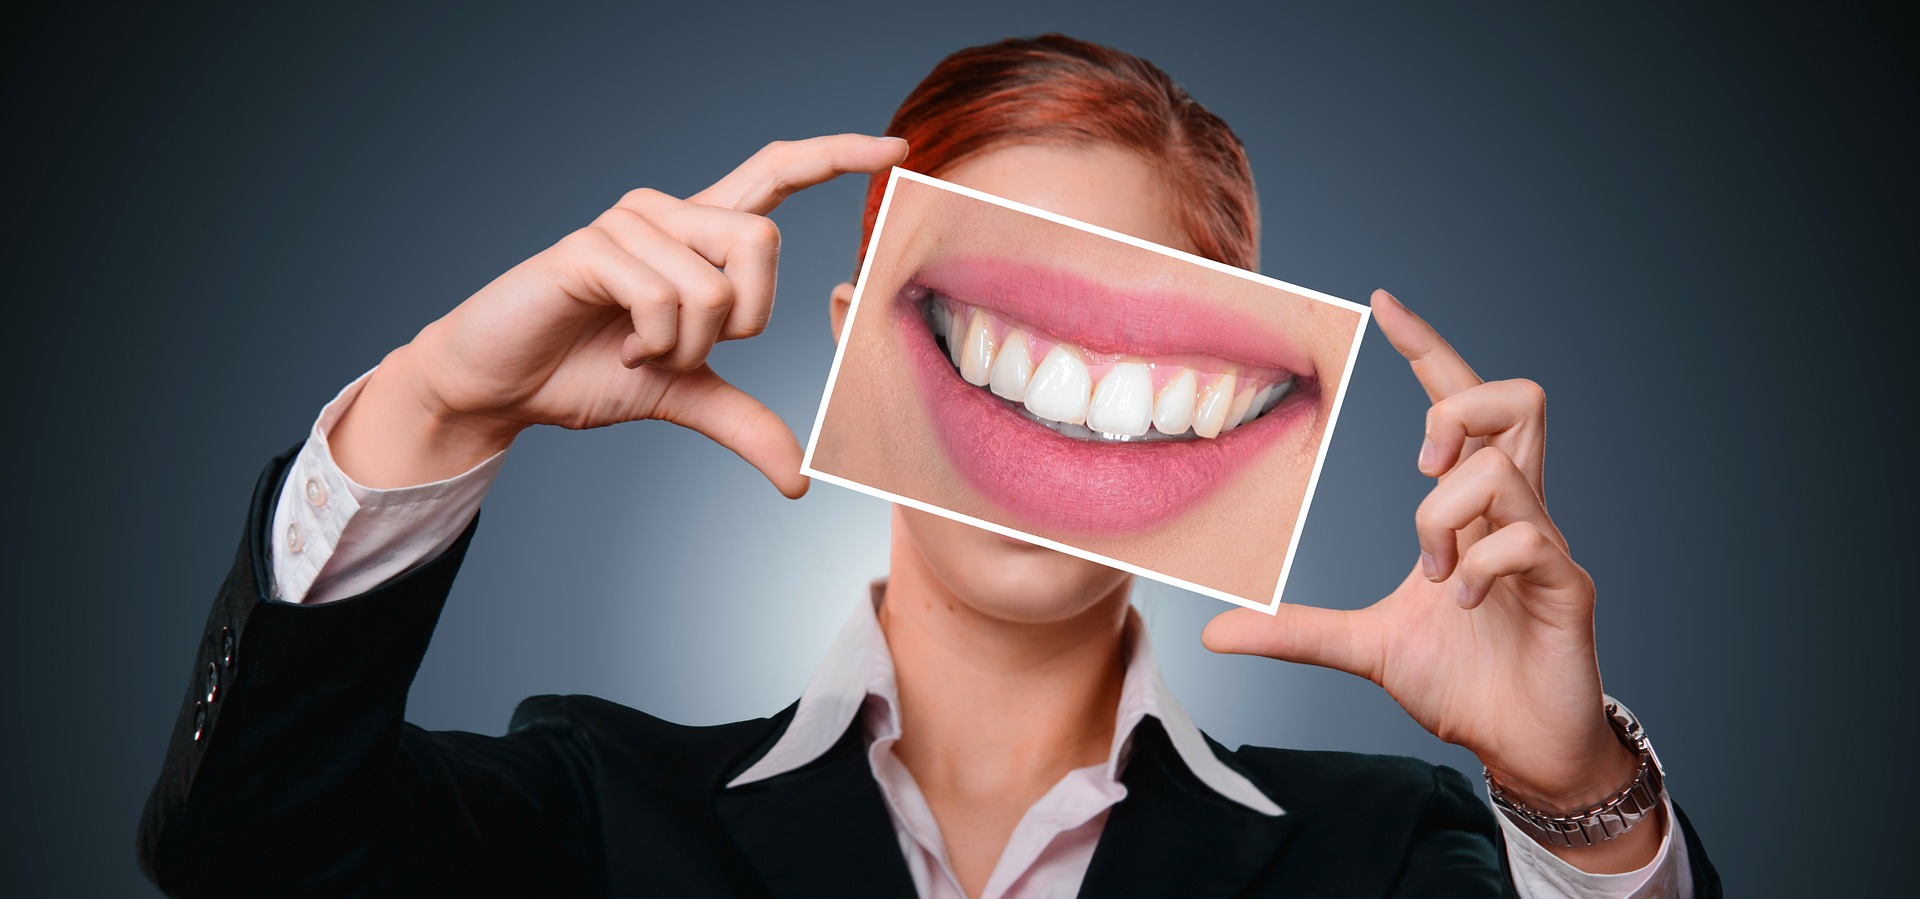 Dijital Gülüş Tasarımı Digital Dental Smile